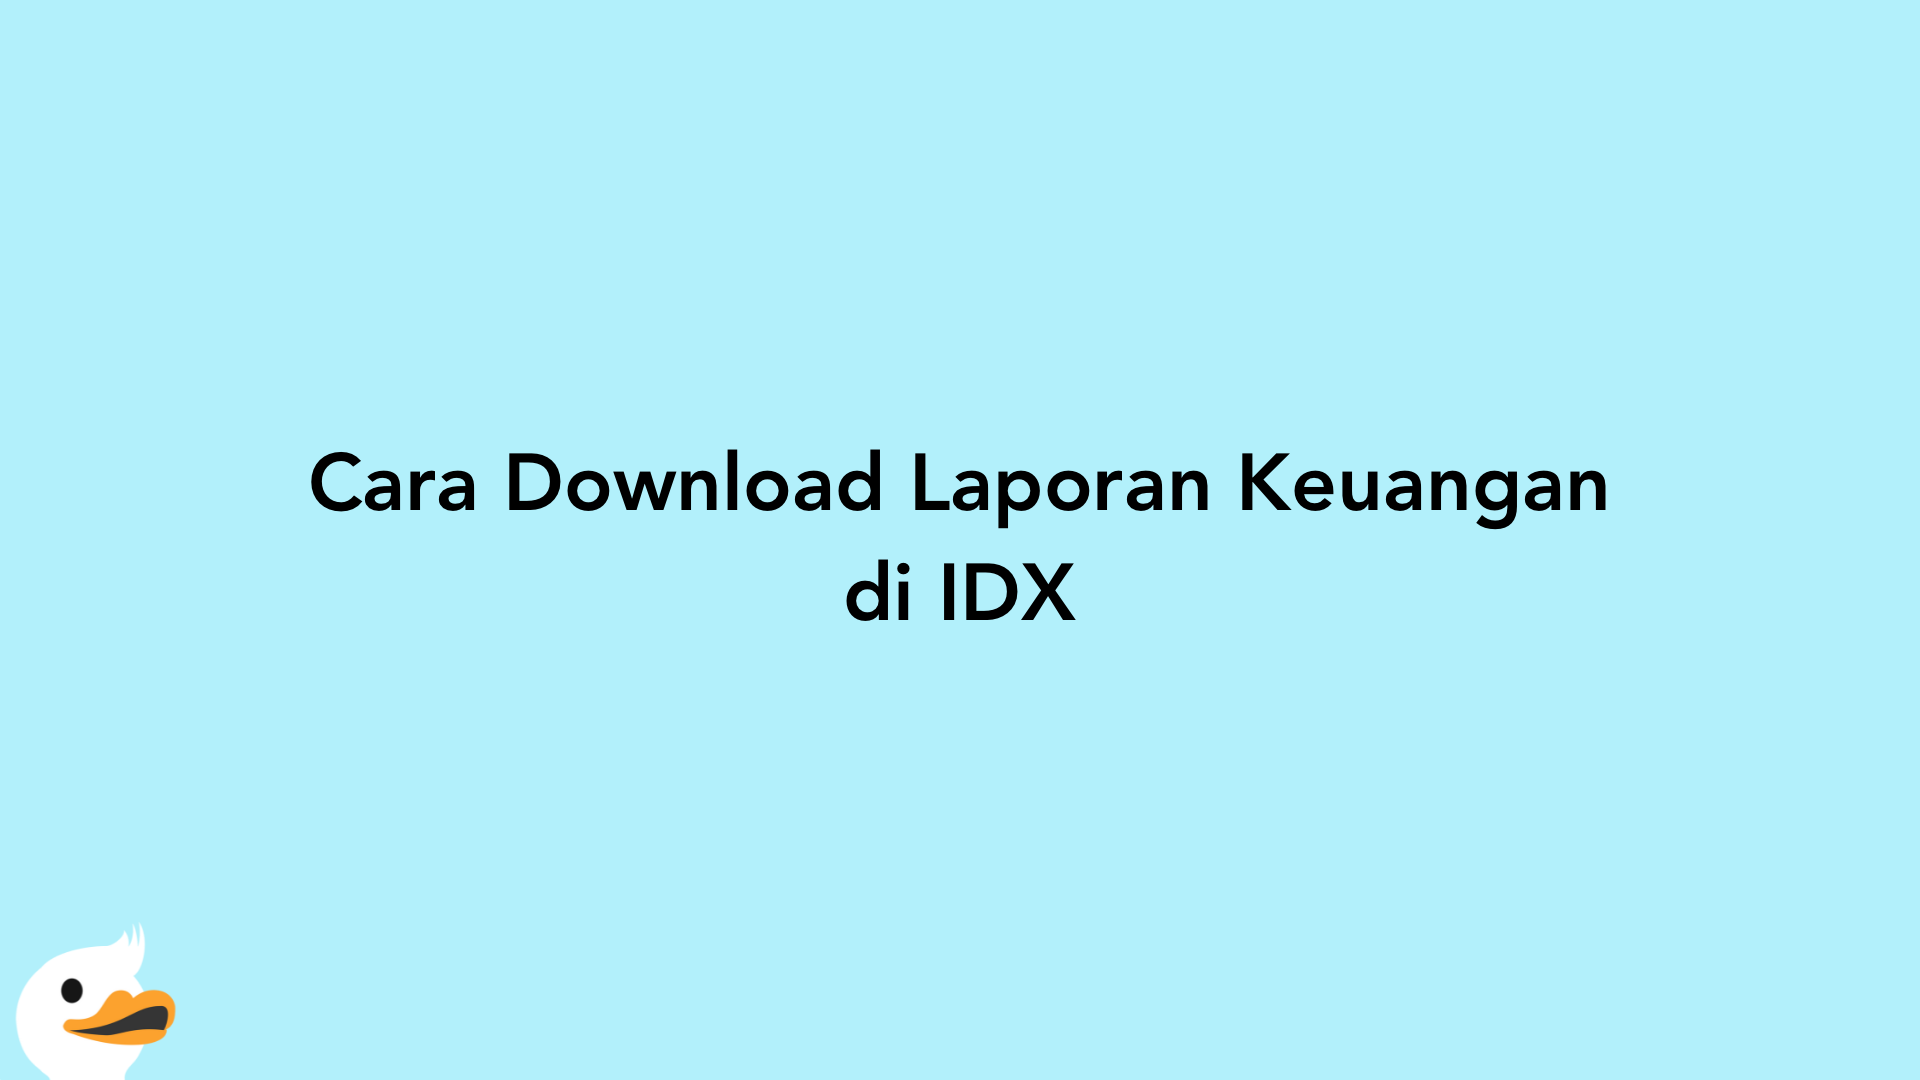 Cara Download Laporan Keuangan di IDX